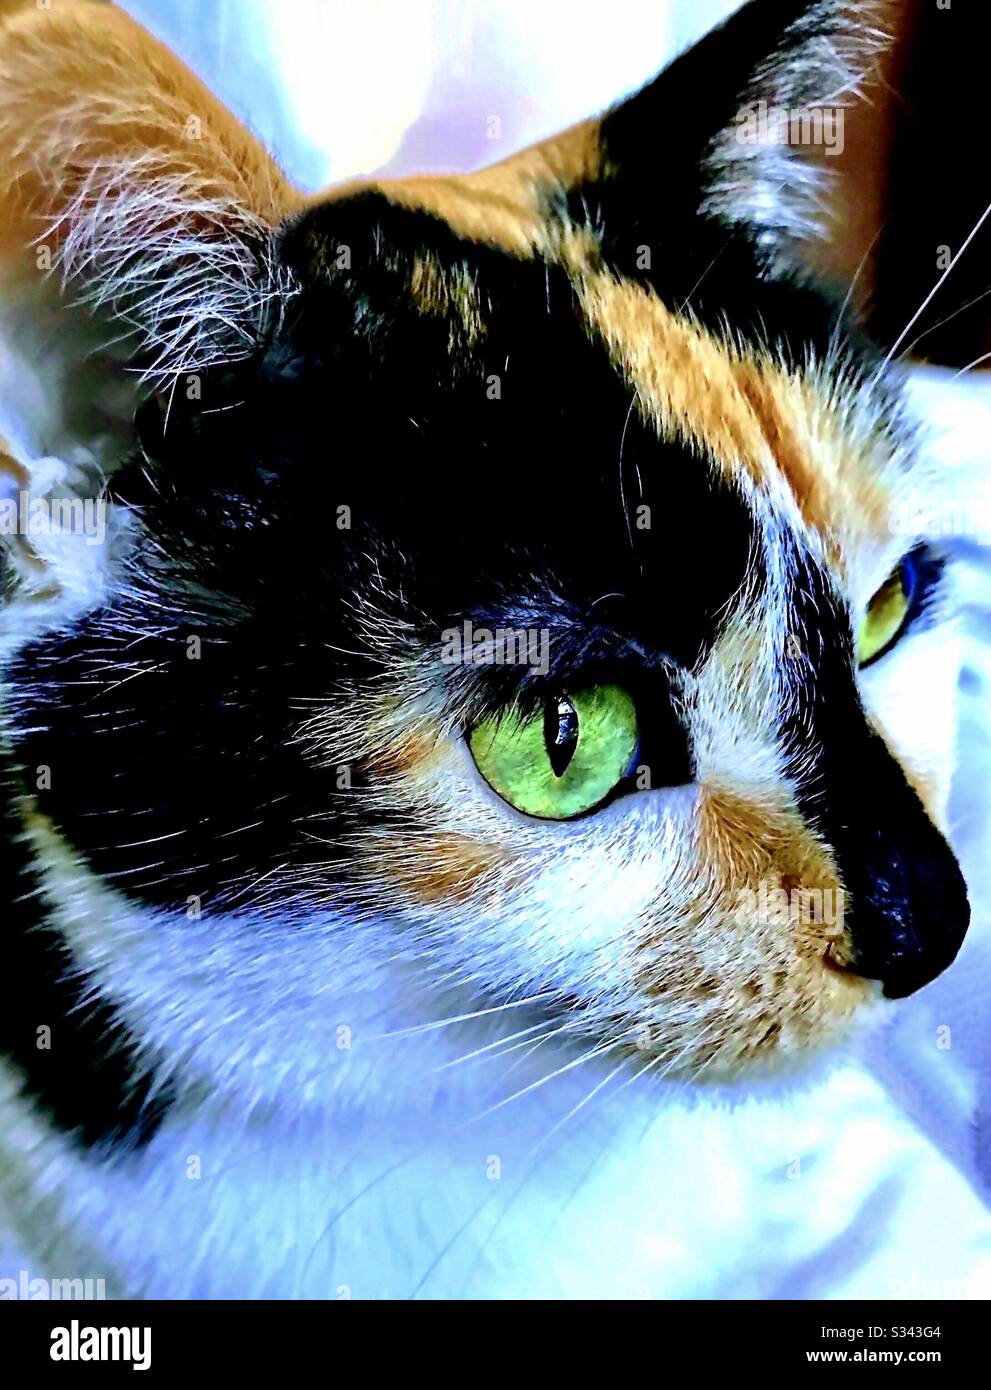 Portrait d'un animal de compagnie intérieur magnifique a craché chat calico femelle avec de magnifiques yeux verts, chat de sauvetage domestique ou américain shorthair Banque D'Images